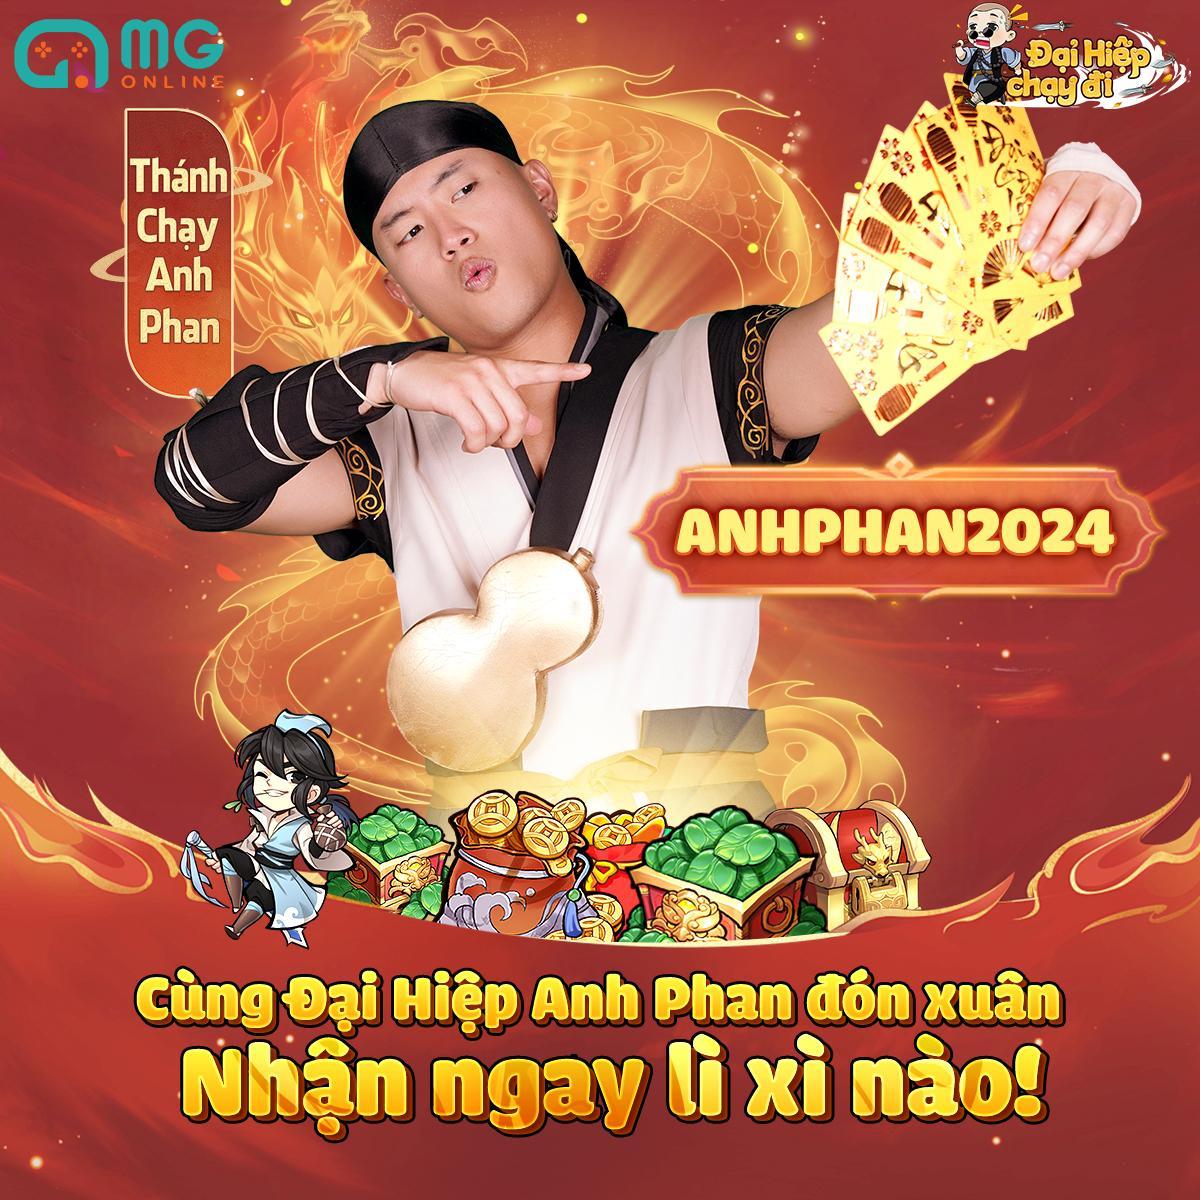 Rapper Anh Phan lần đầu đóng quảng cáo cùng Minh Lai- Ảnh 5.